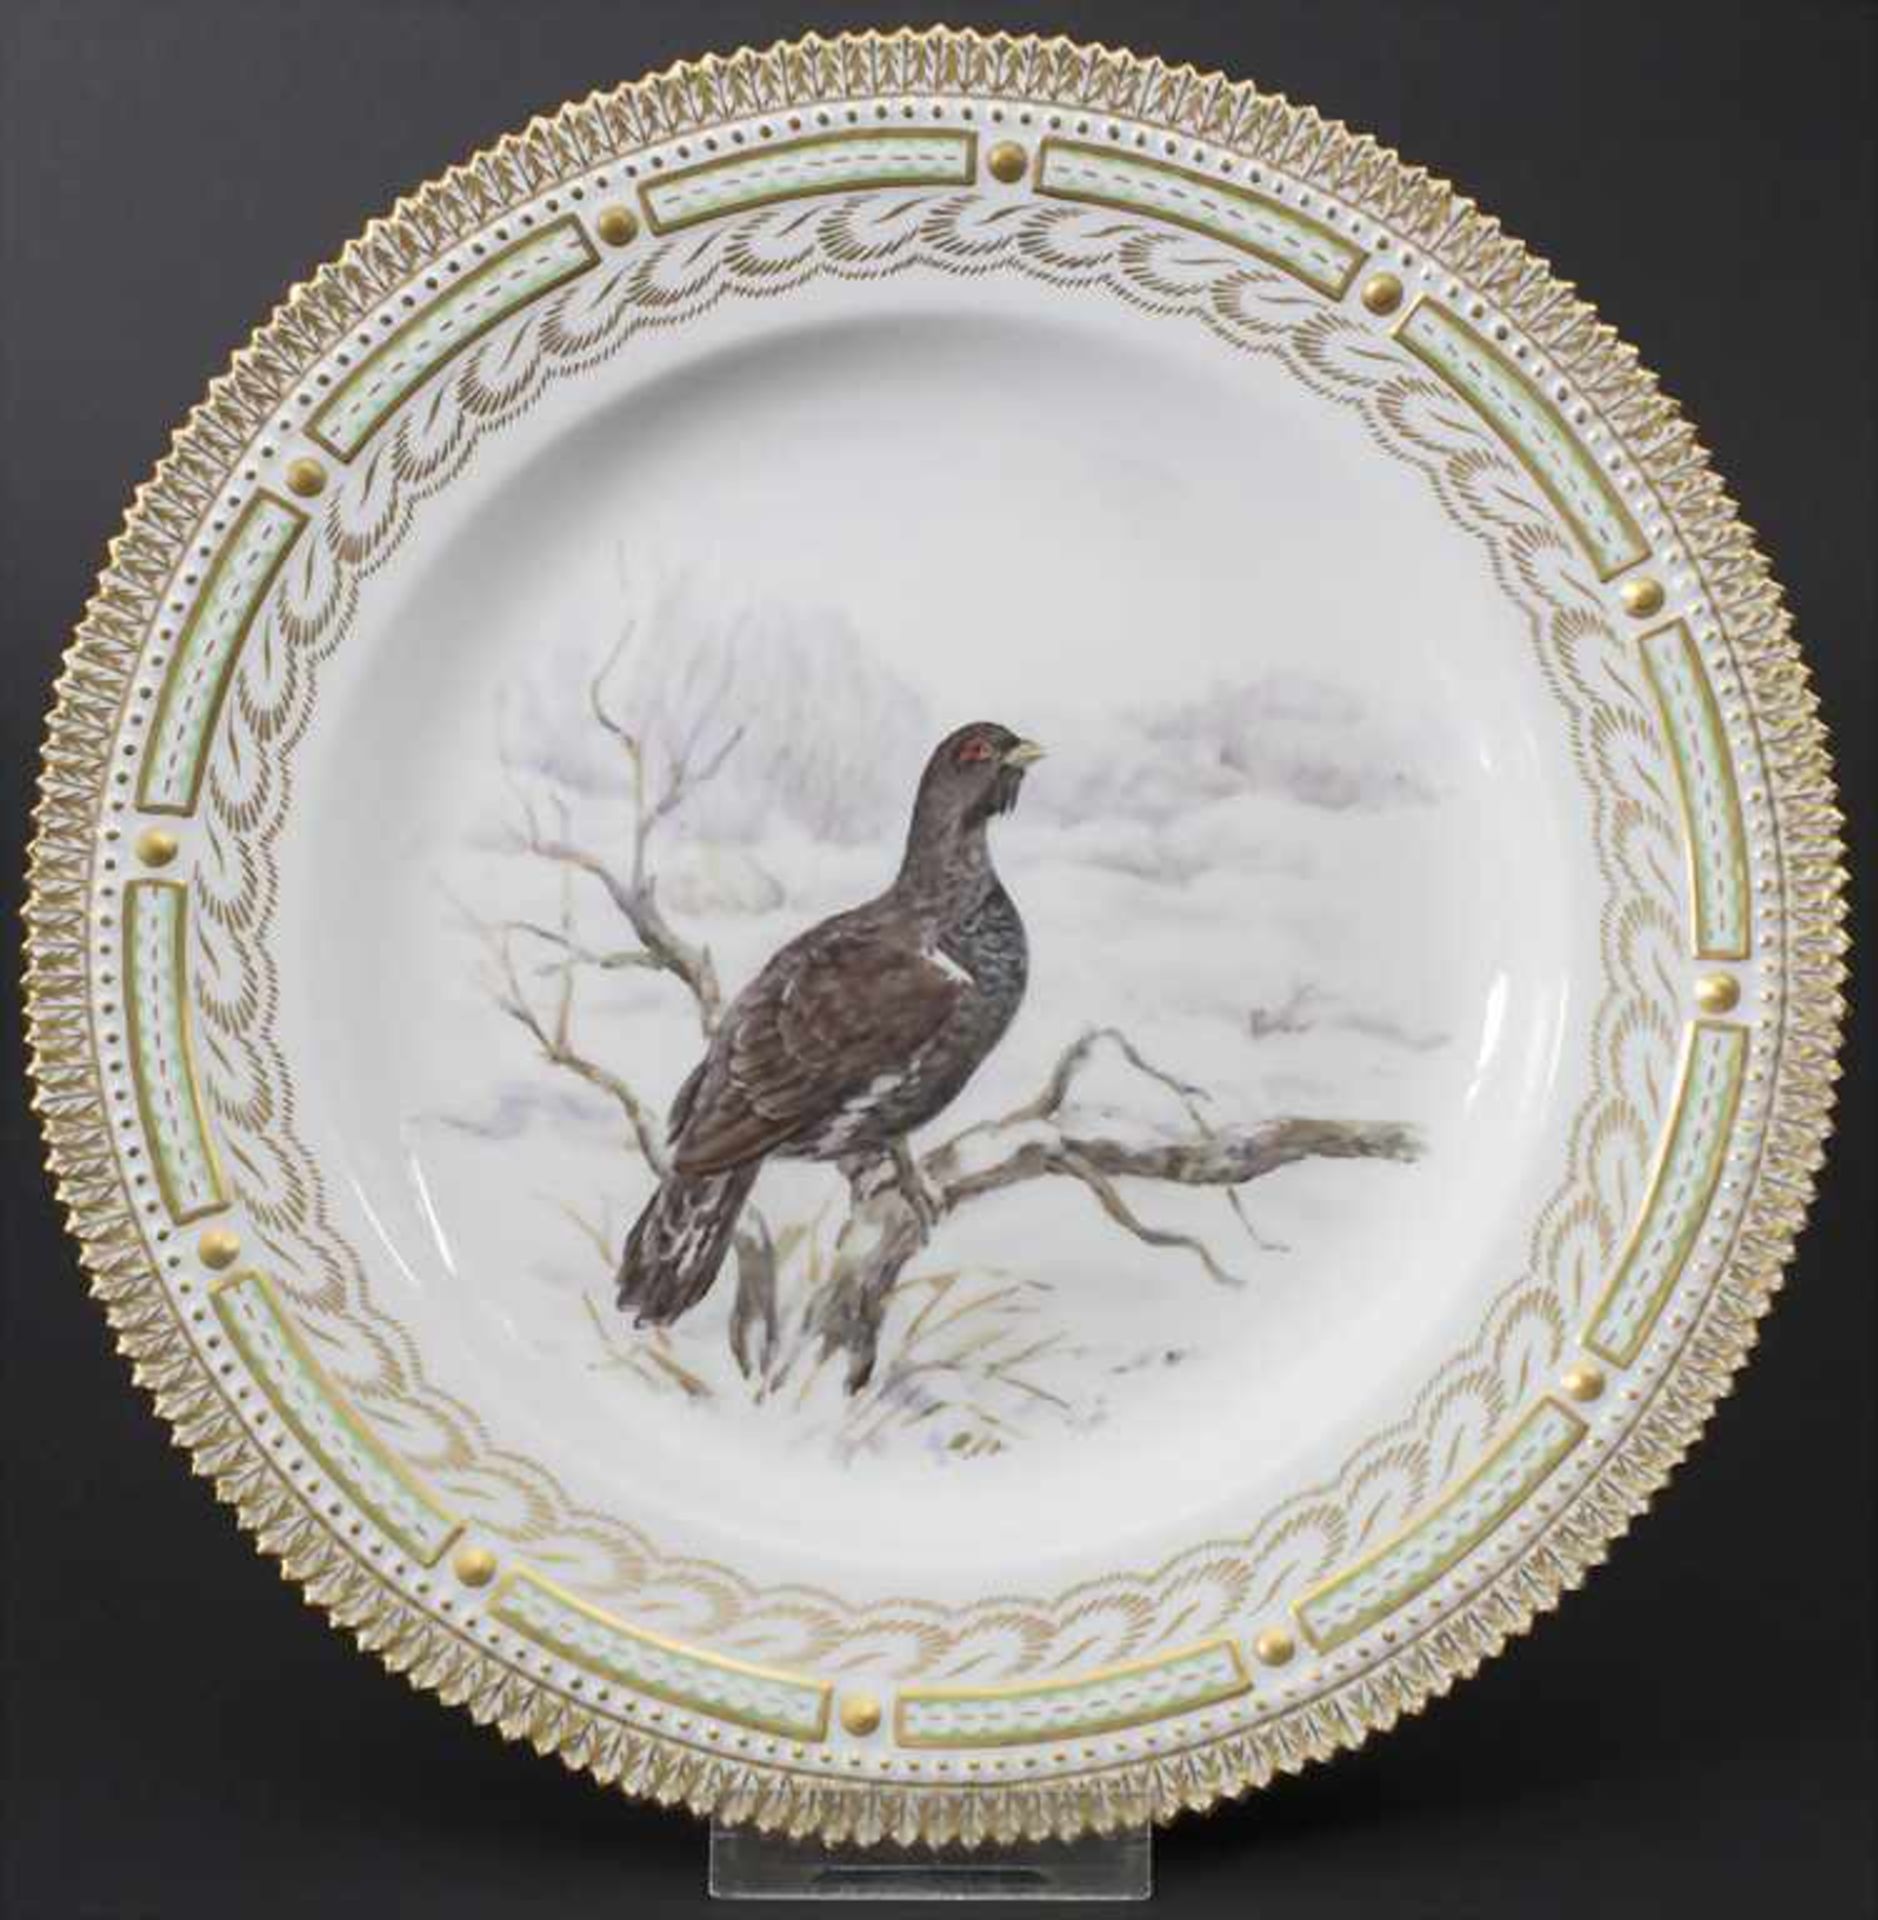 Teller mit einem Auerhahn in Winterlandschaft / A plate with a winter landscape and a grouse,